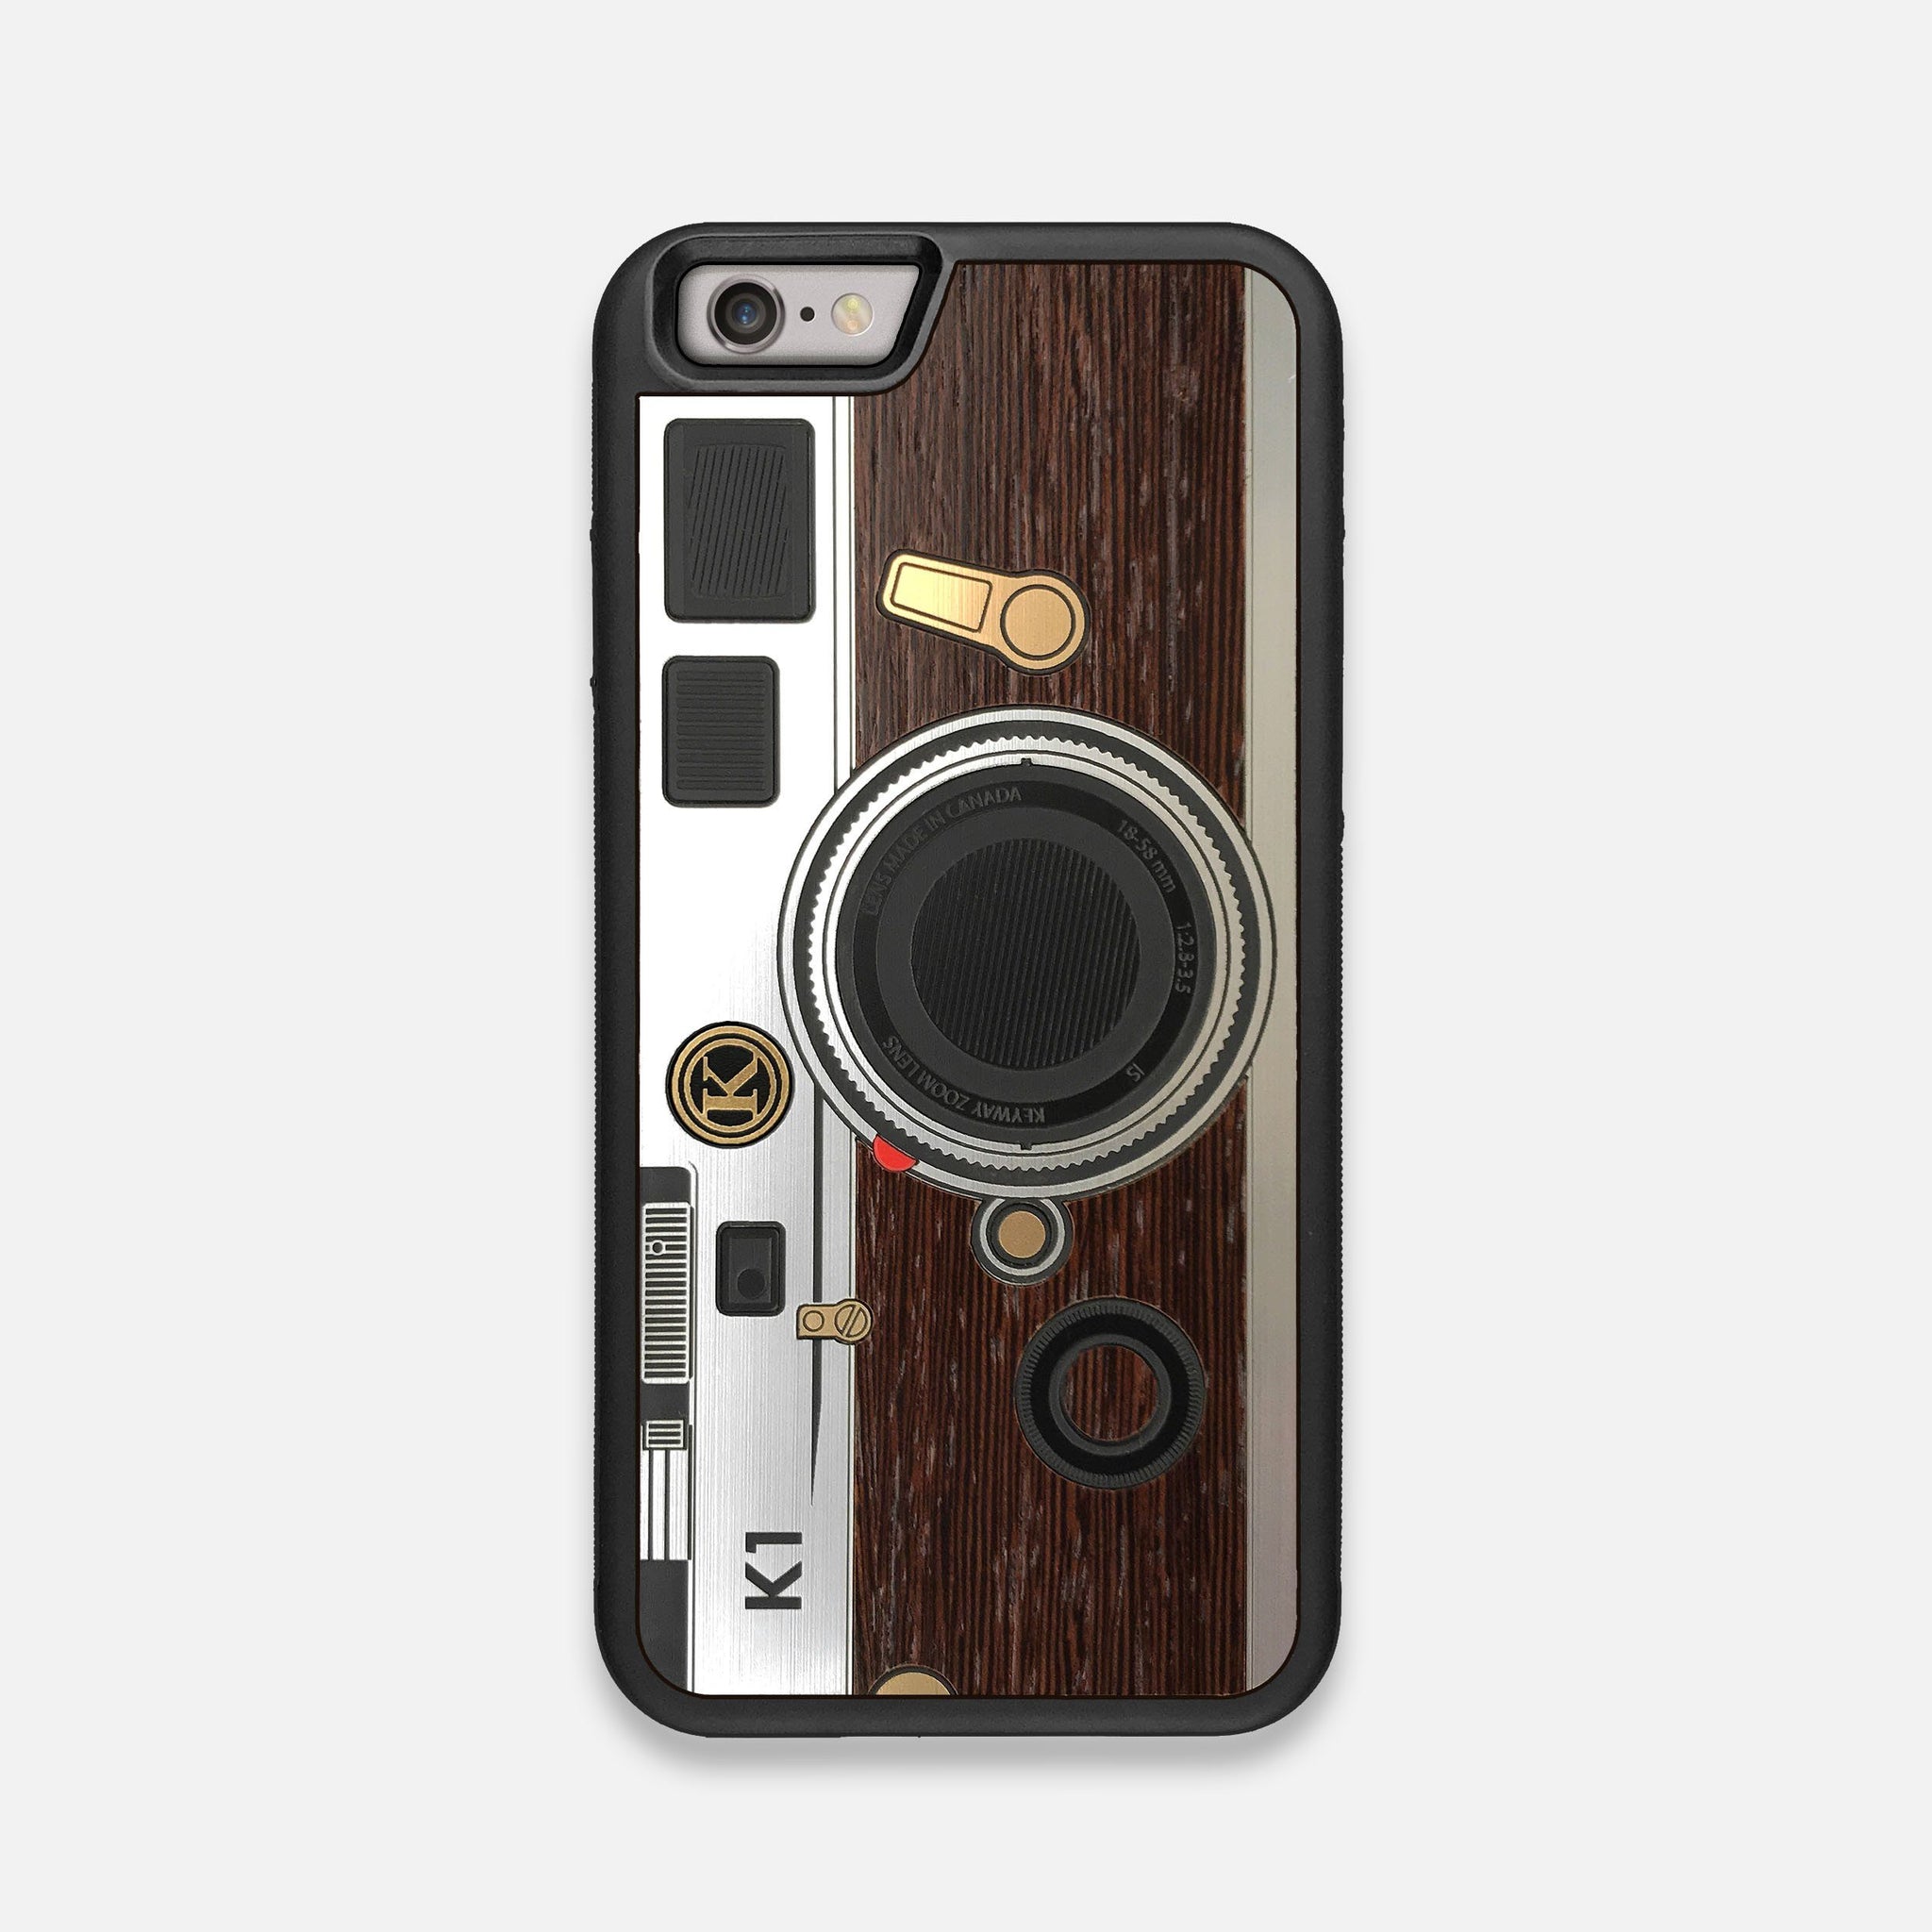 Model K1 | Handmade Silver & Wenge Wood iPhone 6 Case by Keyway